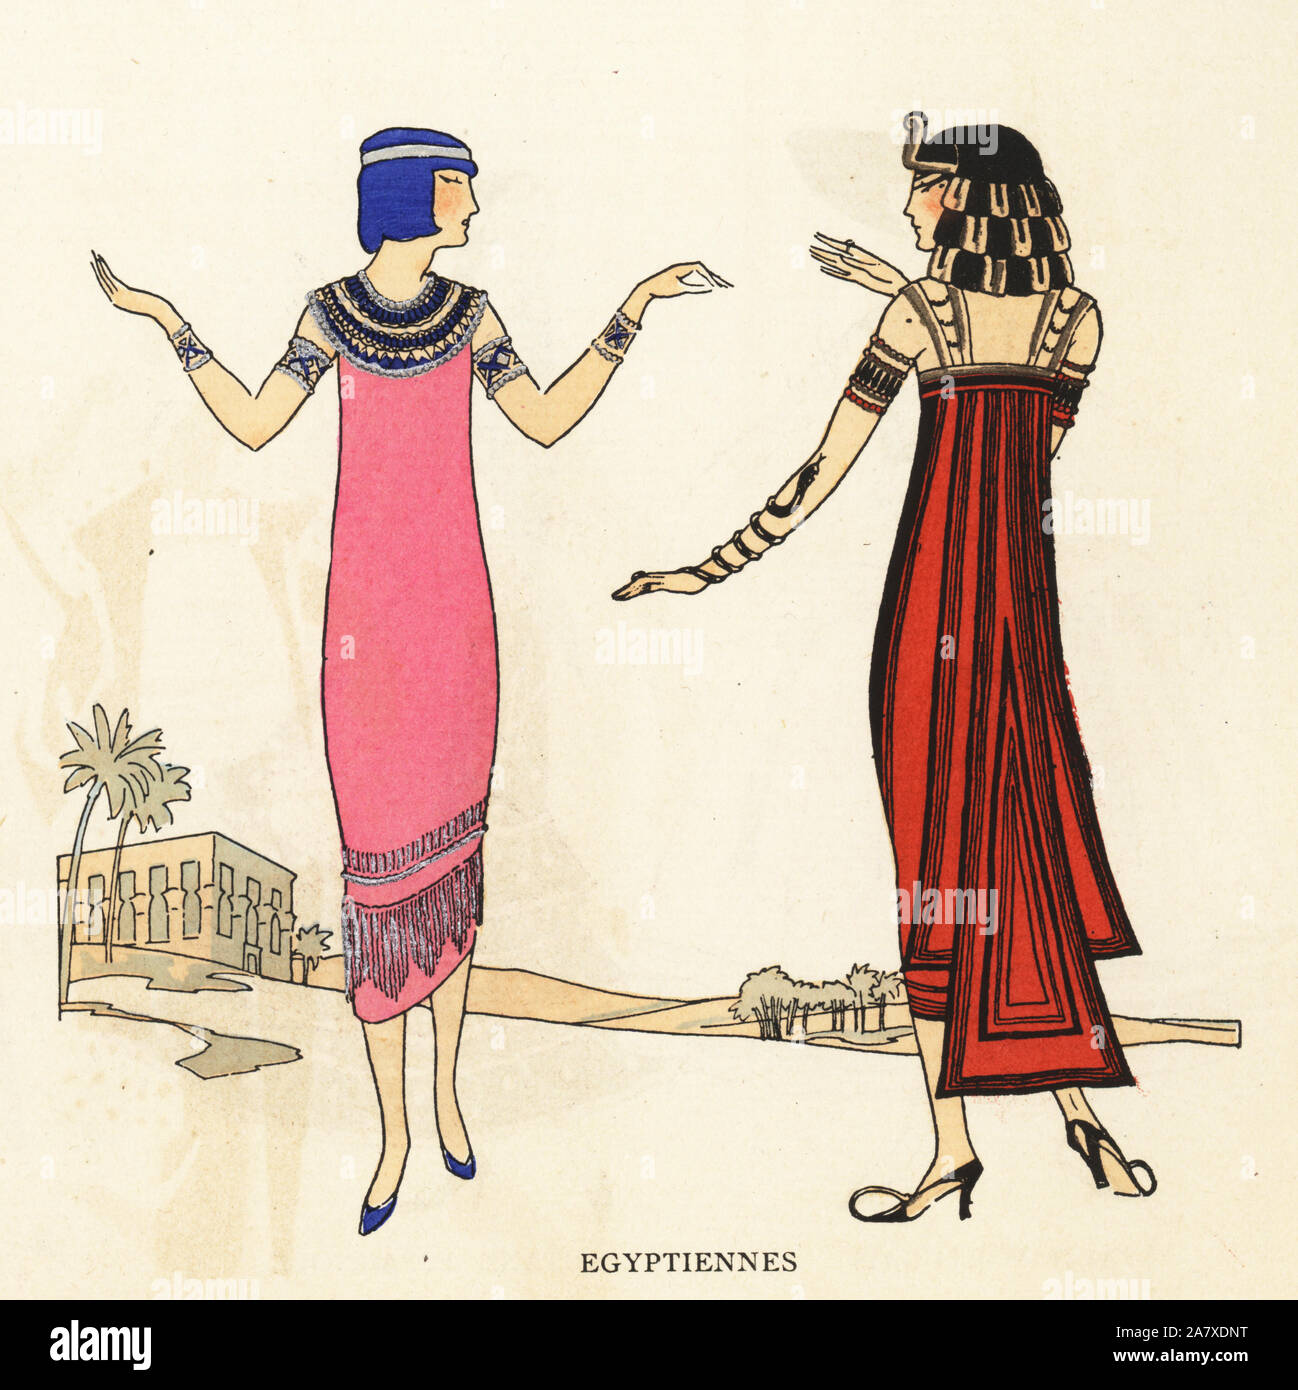 Frauen in Kostüme als alten ägyptischen Tänzerinnen. Papierkörbe pochoir (Schablone) Lithographie von der Französischen luxus Mode Magazin Kunst, Gicht, Beauté, 1925. Stockfoto